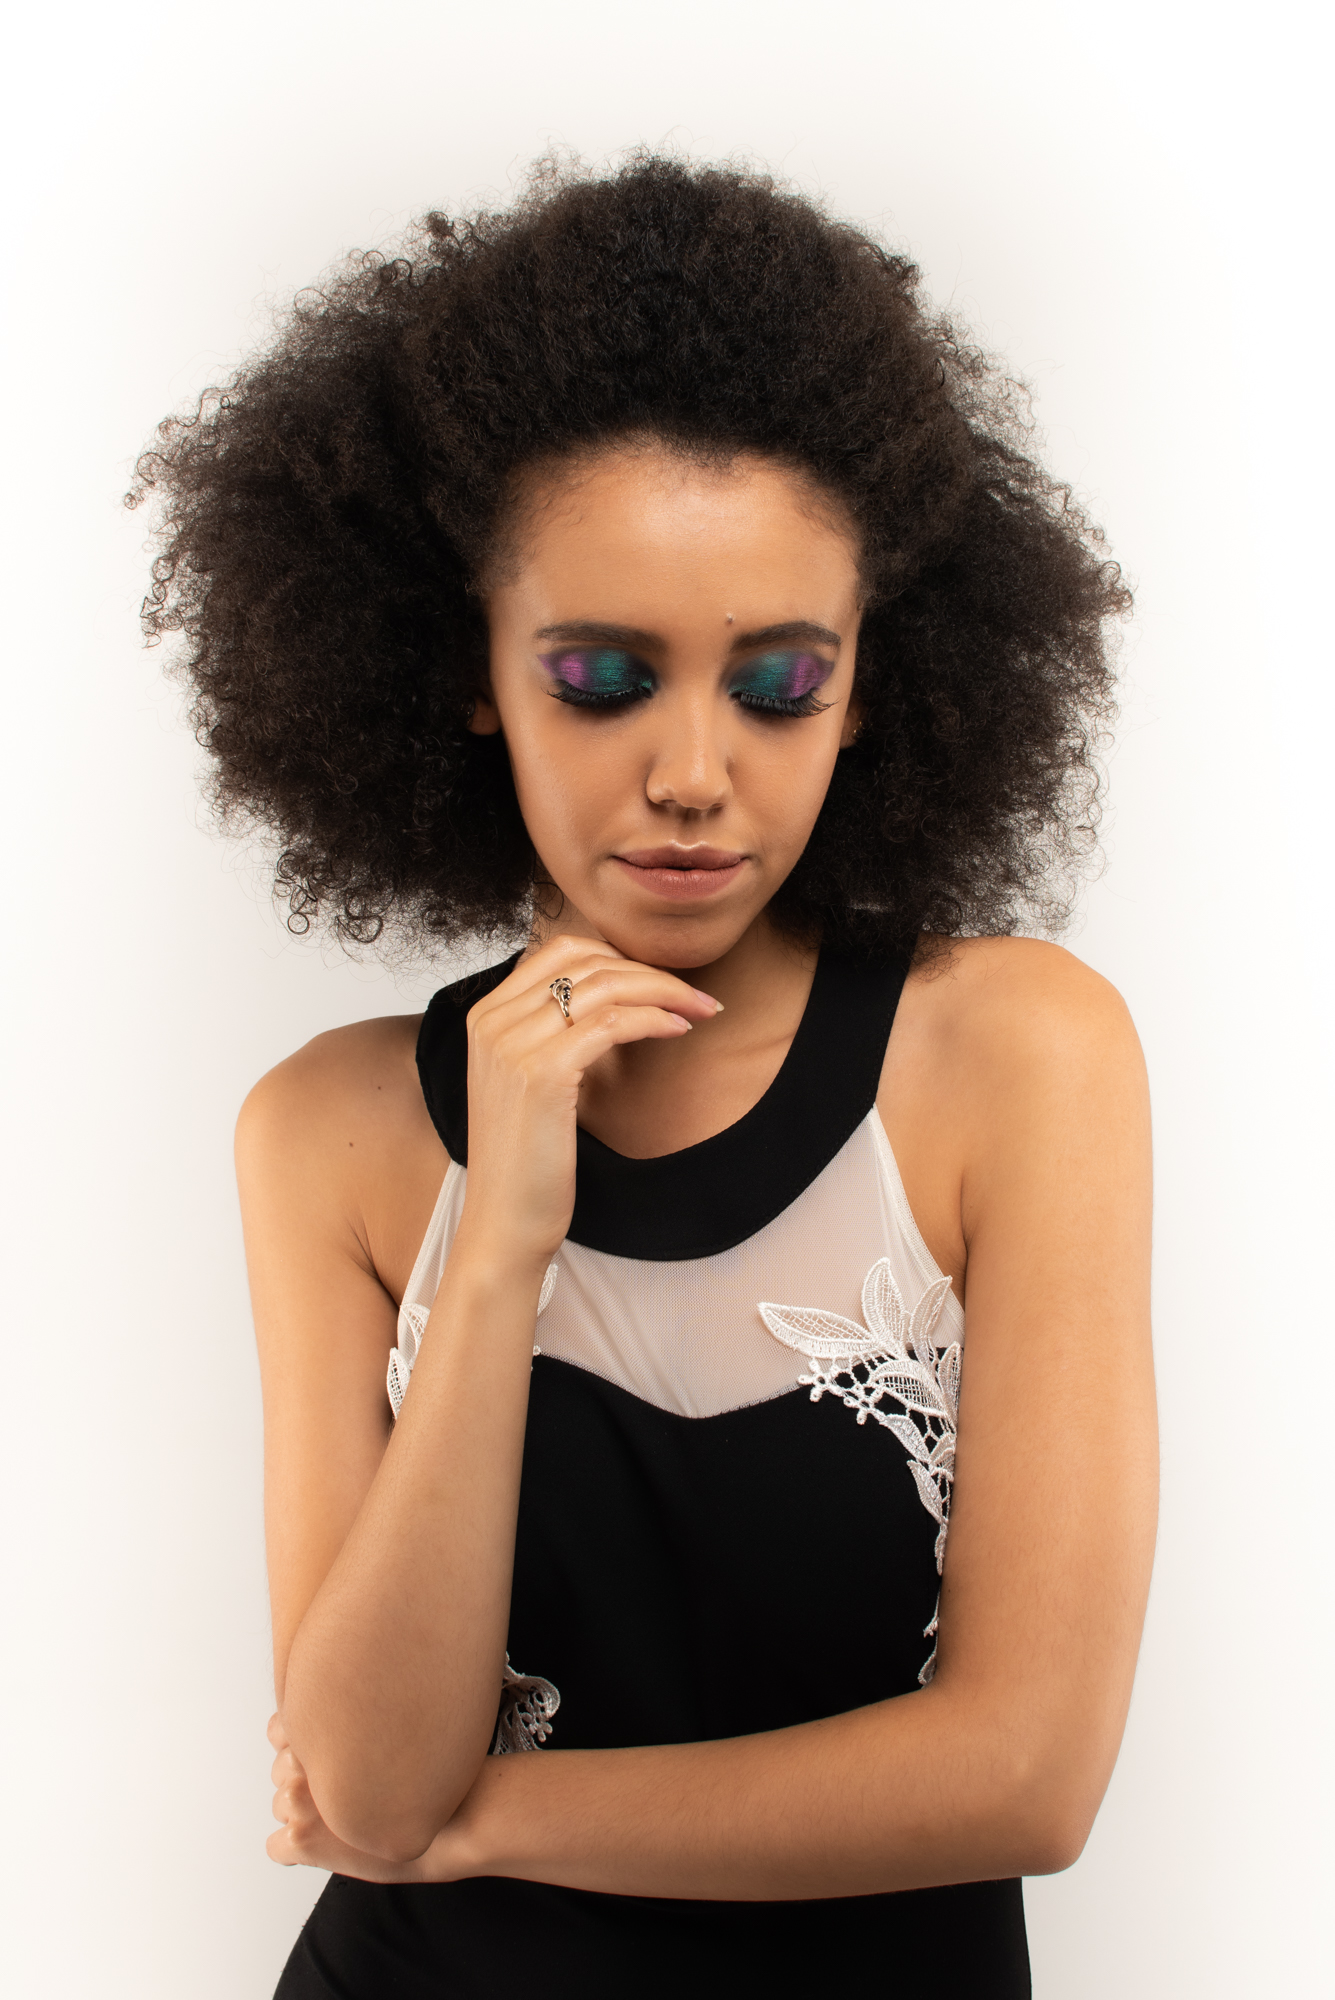 Sofia Mayers Modeling & Make-up Day – Mark Thompson Photography